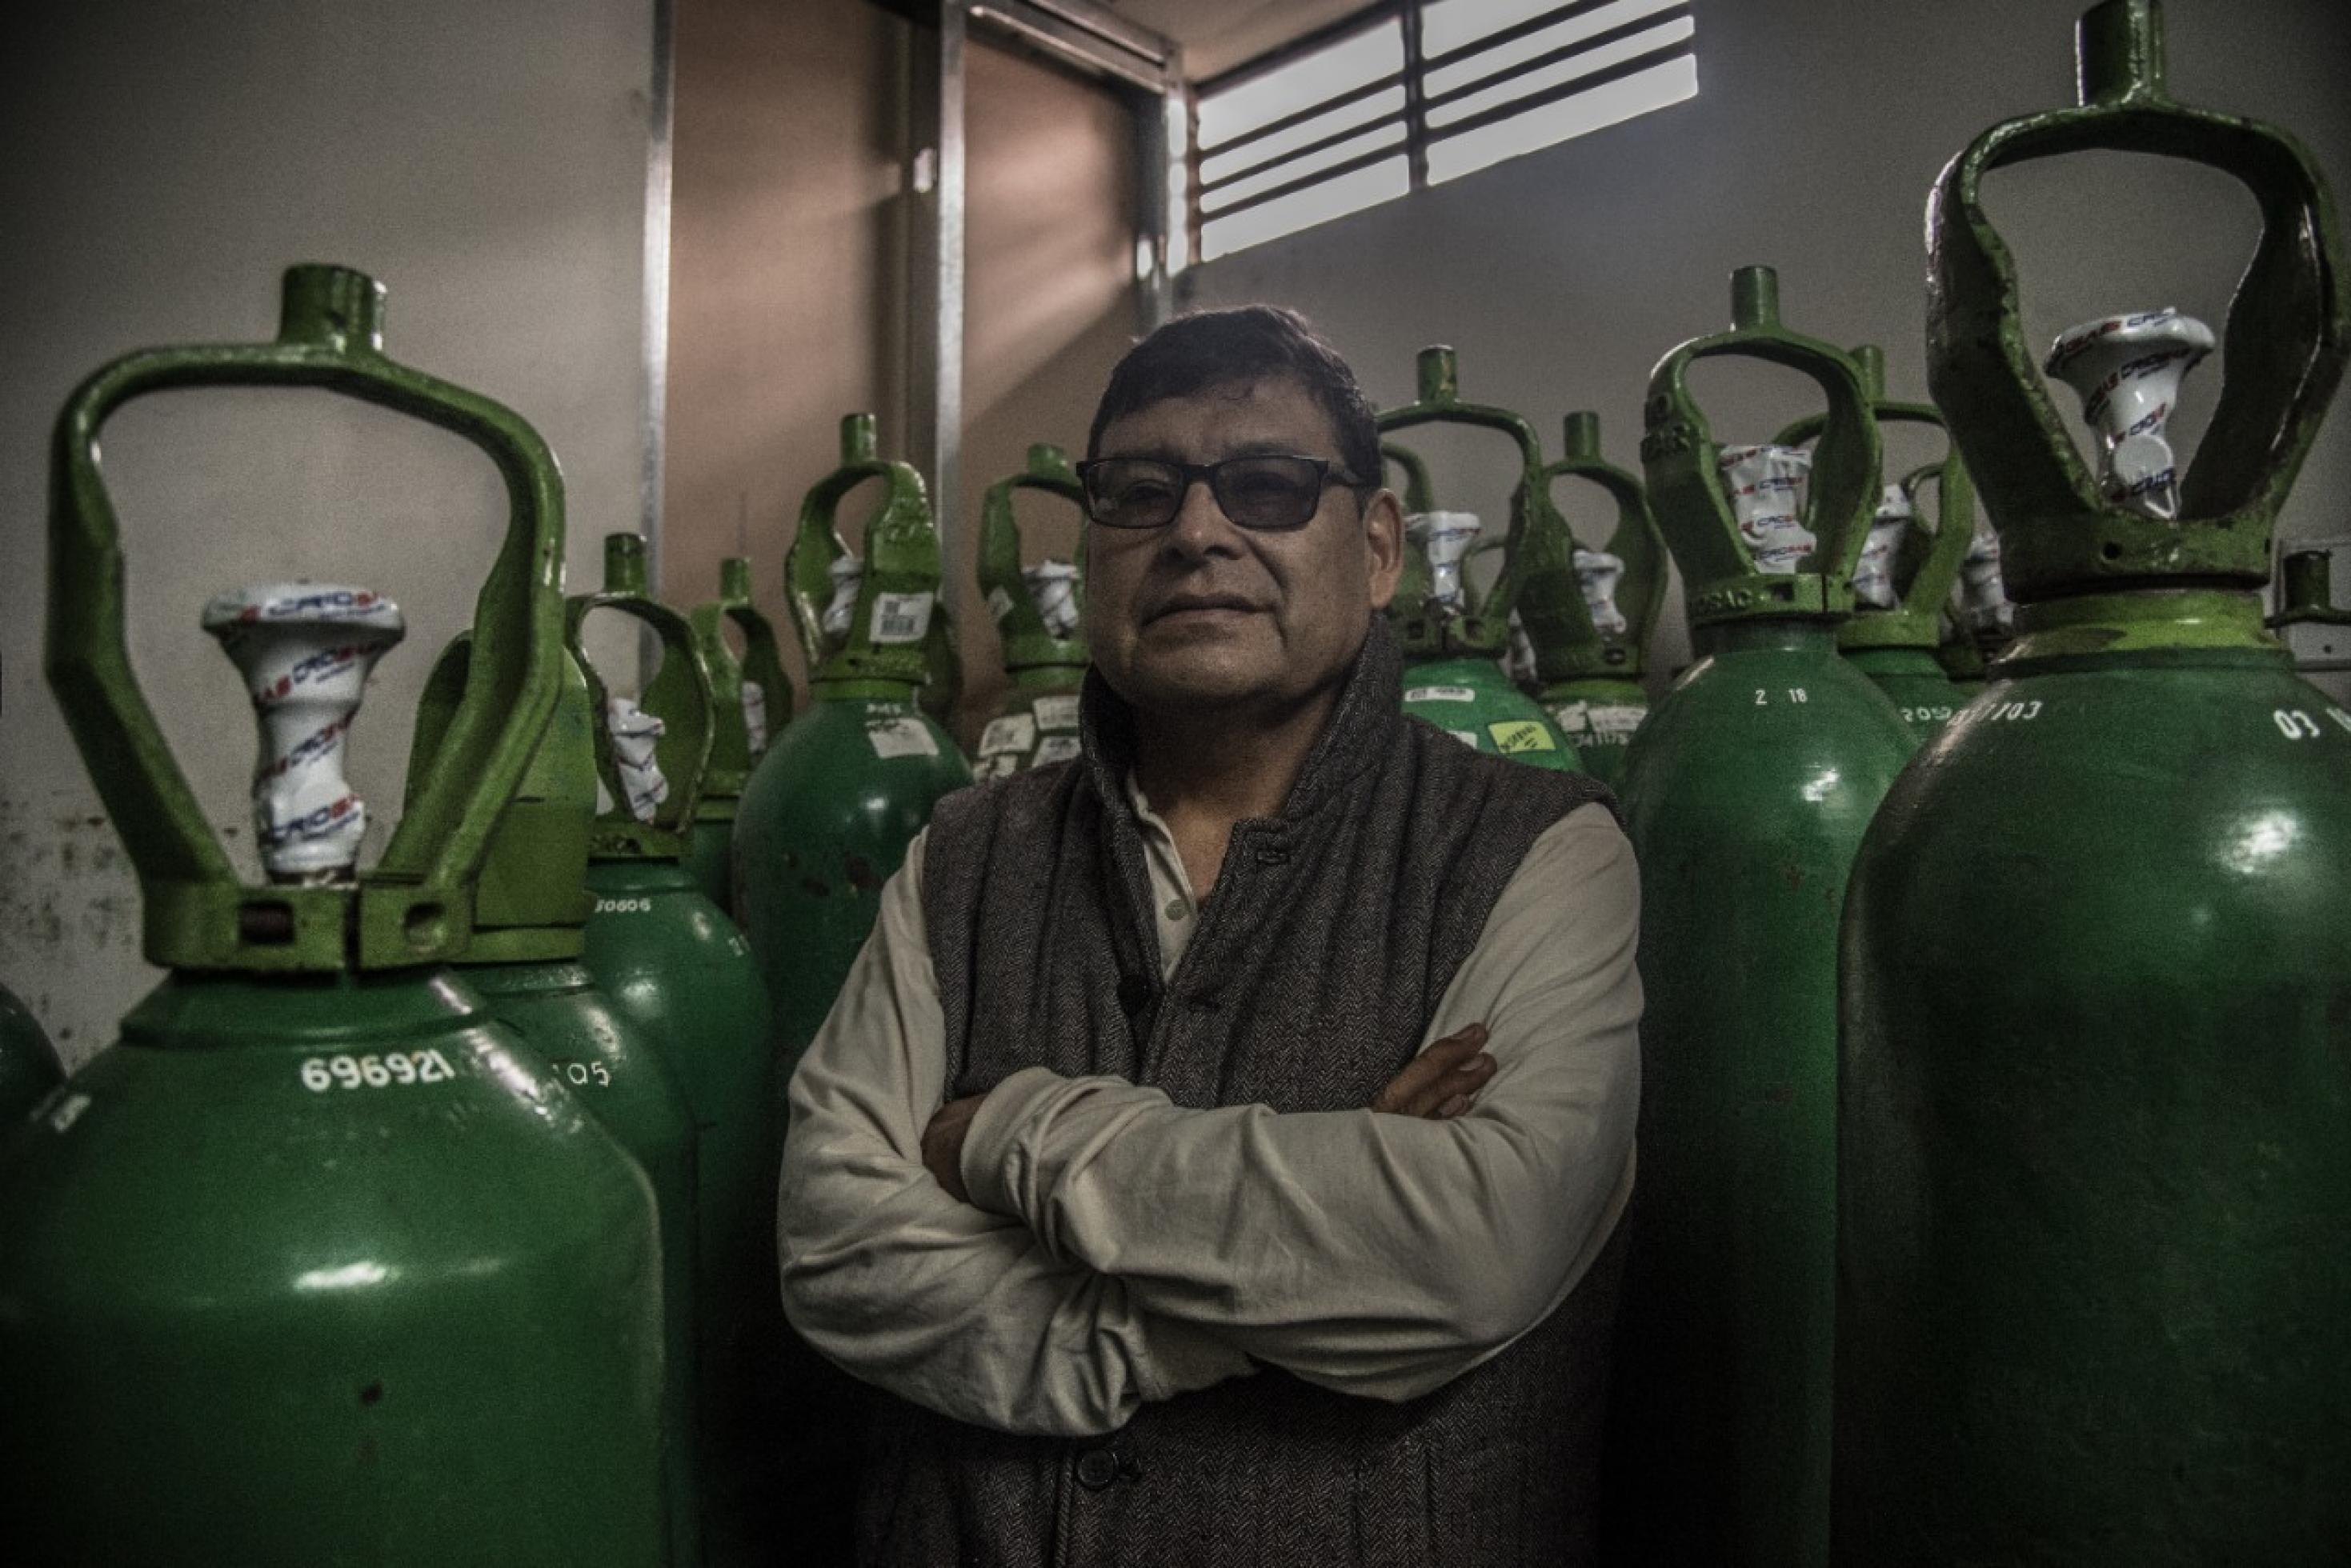 Rund 60-jähriger Mann mit Brille, verschränkten Armen, steht umgeben von grünen Sauerstoff-Flaschen aus Stahl.